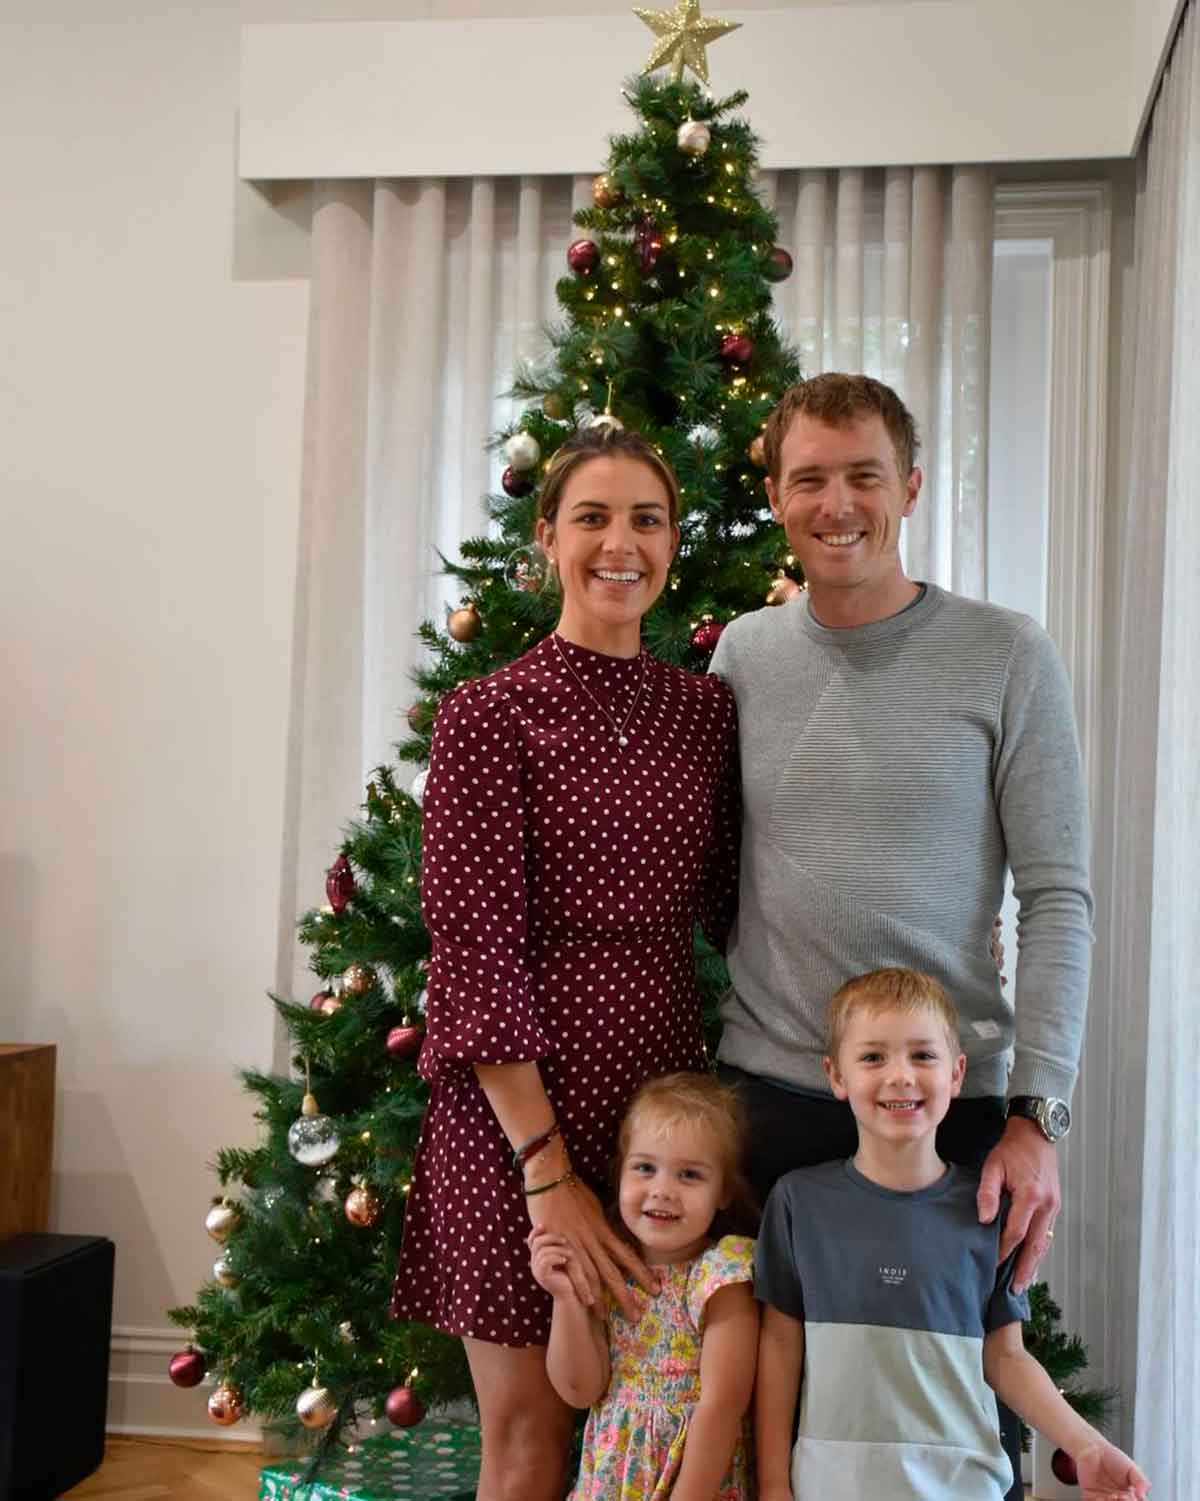 Rohan Dennis, su esposa Melissa Dennis y sus dos hijos. Foto: Reproducción Instagram @rohandennis